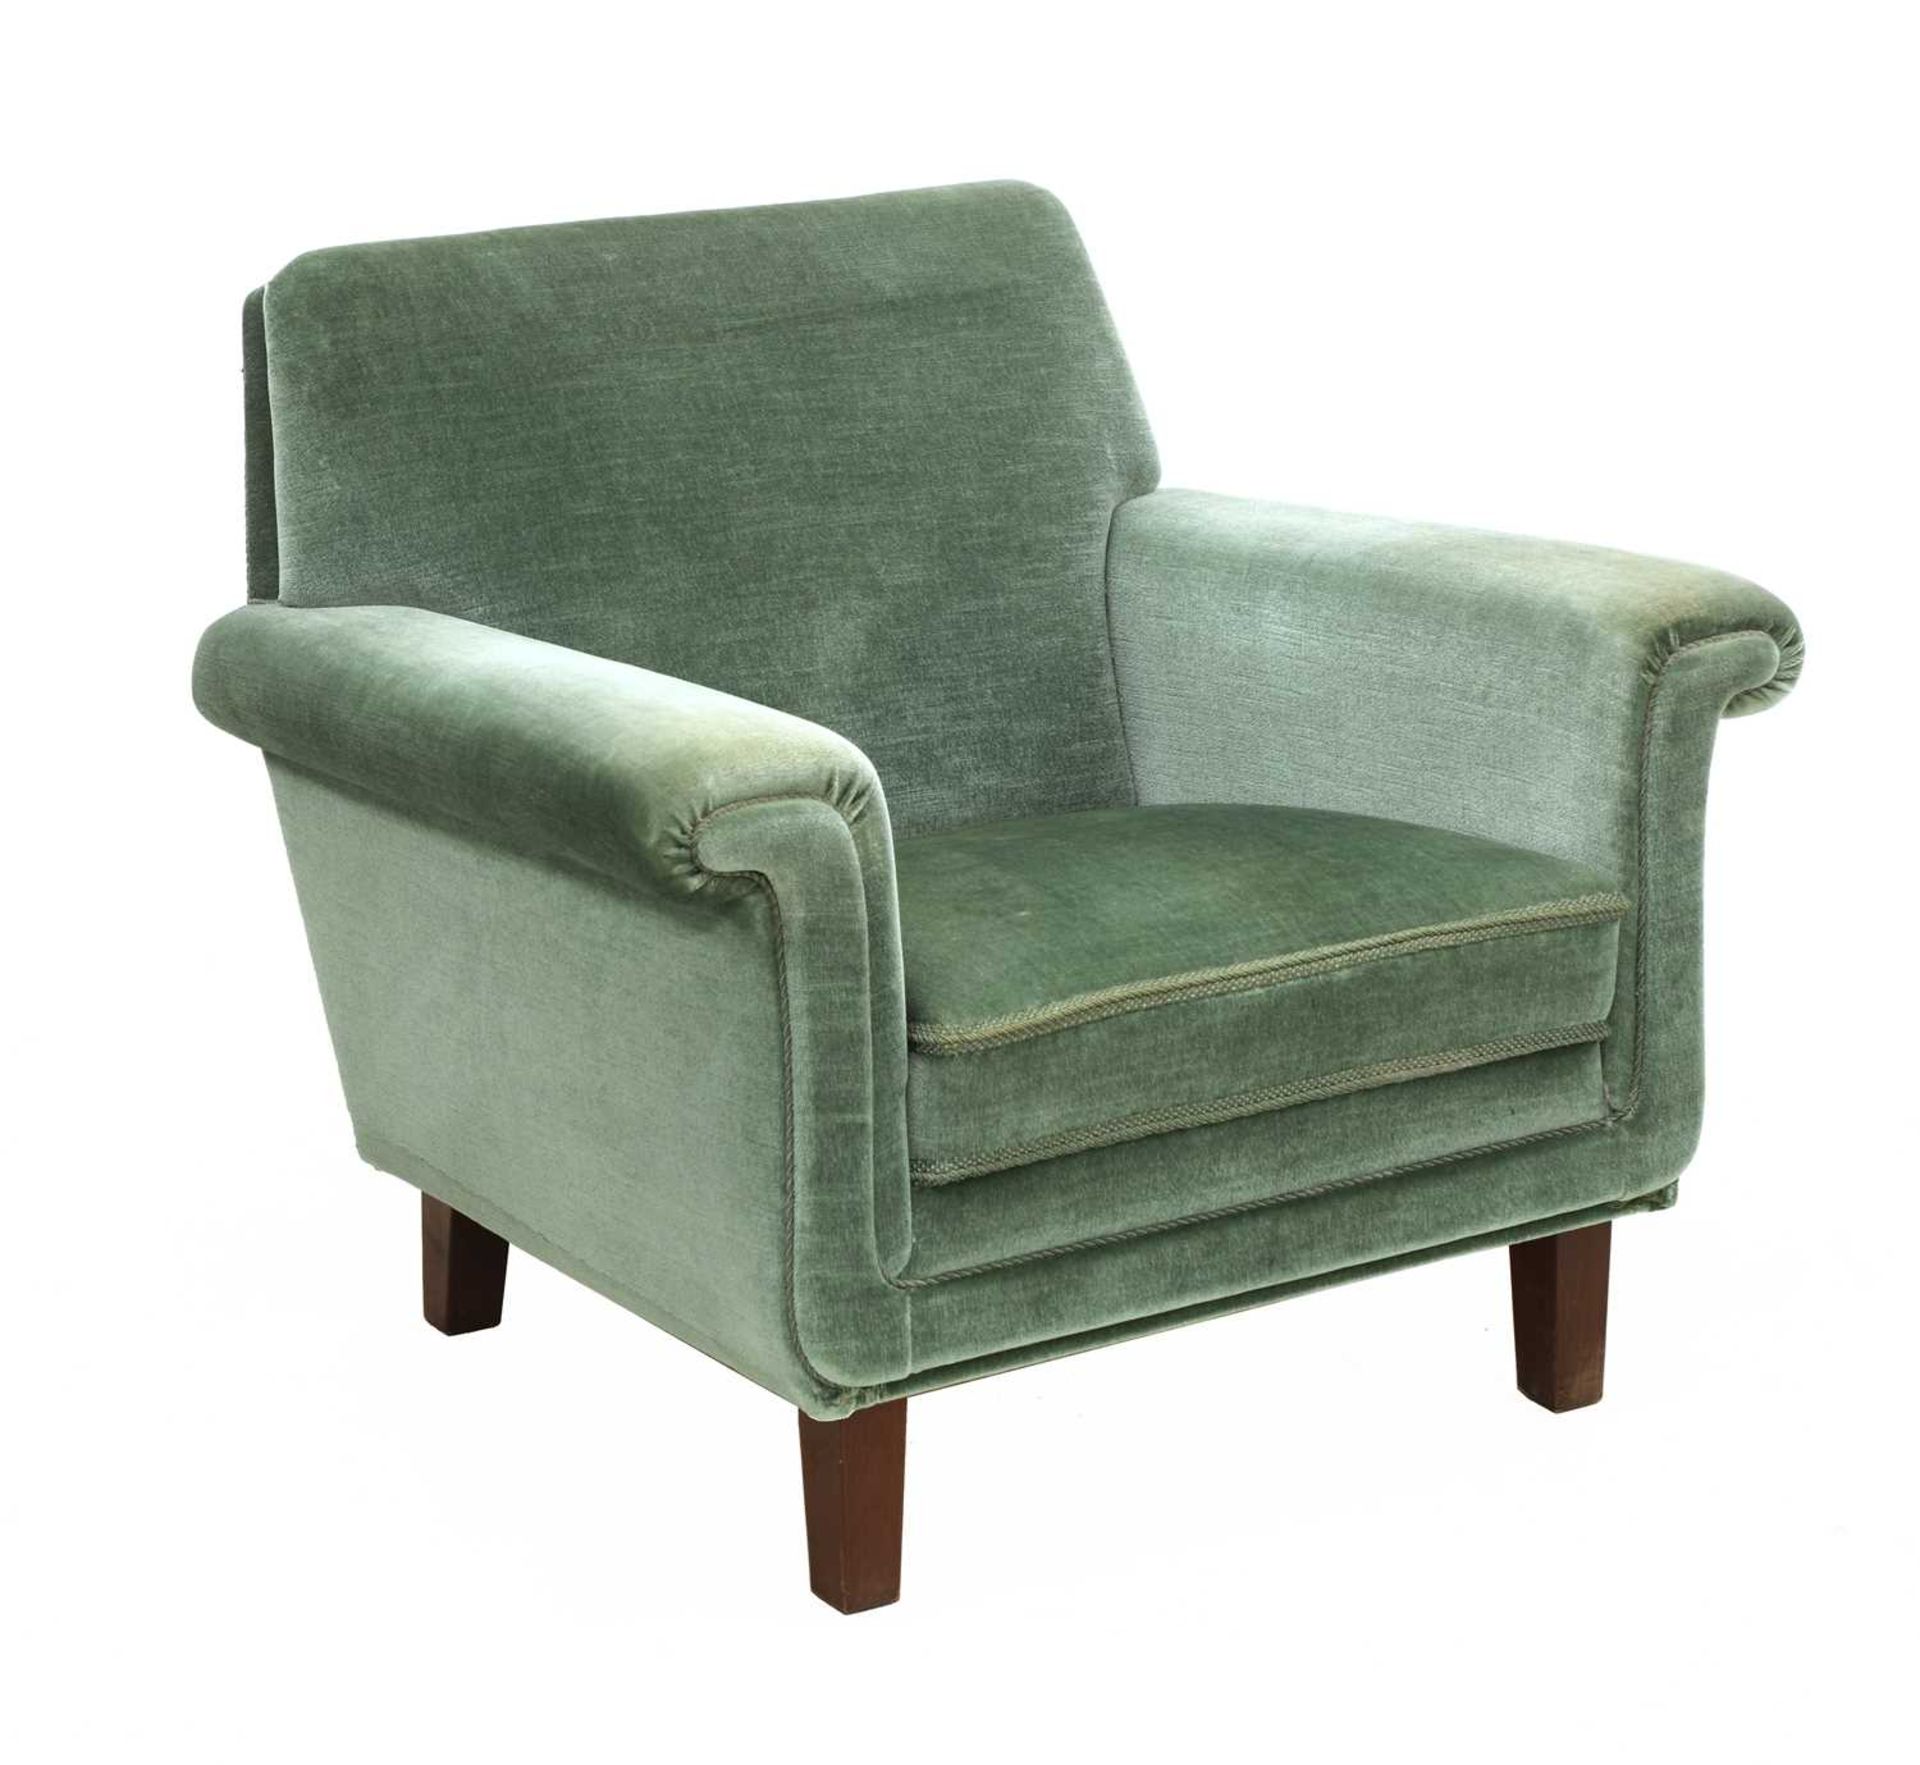 An Art Deco armchair,